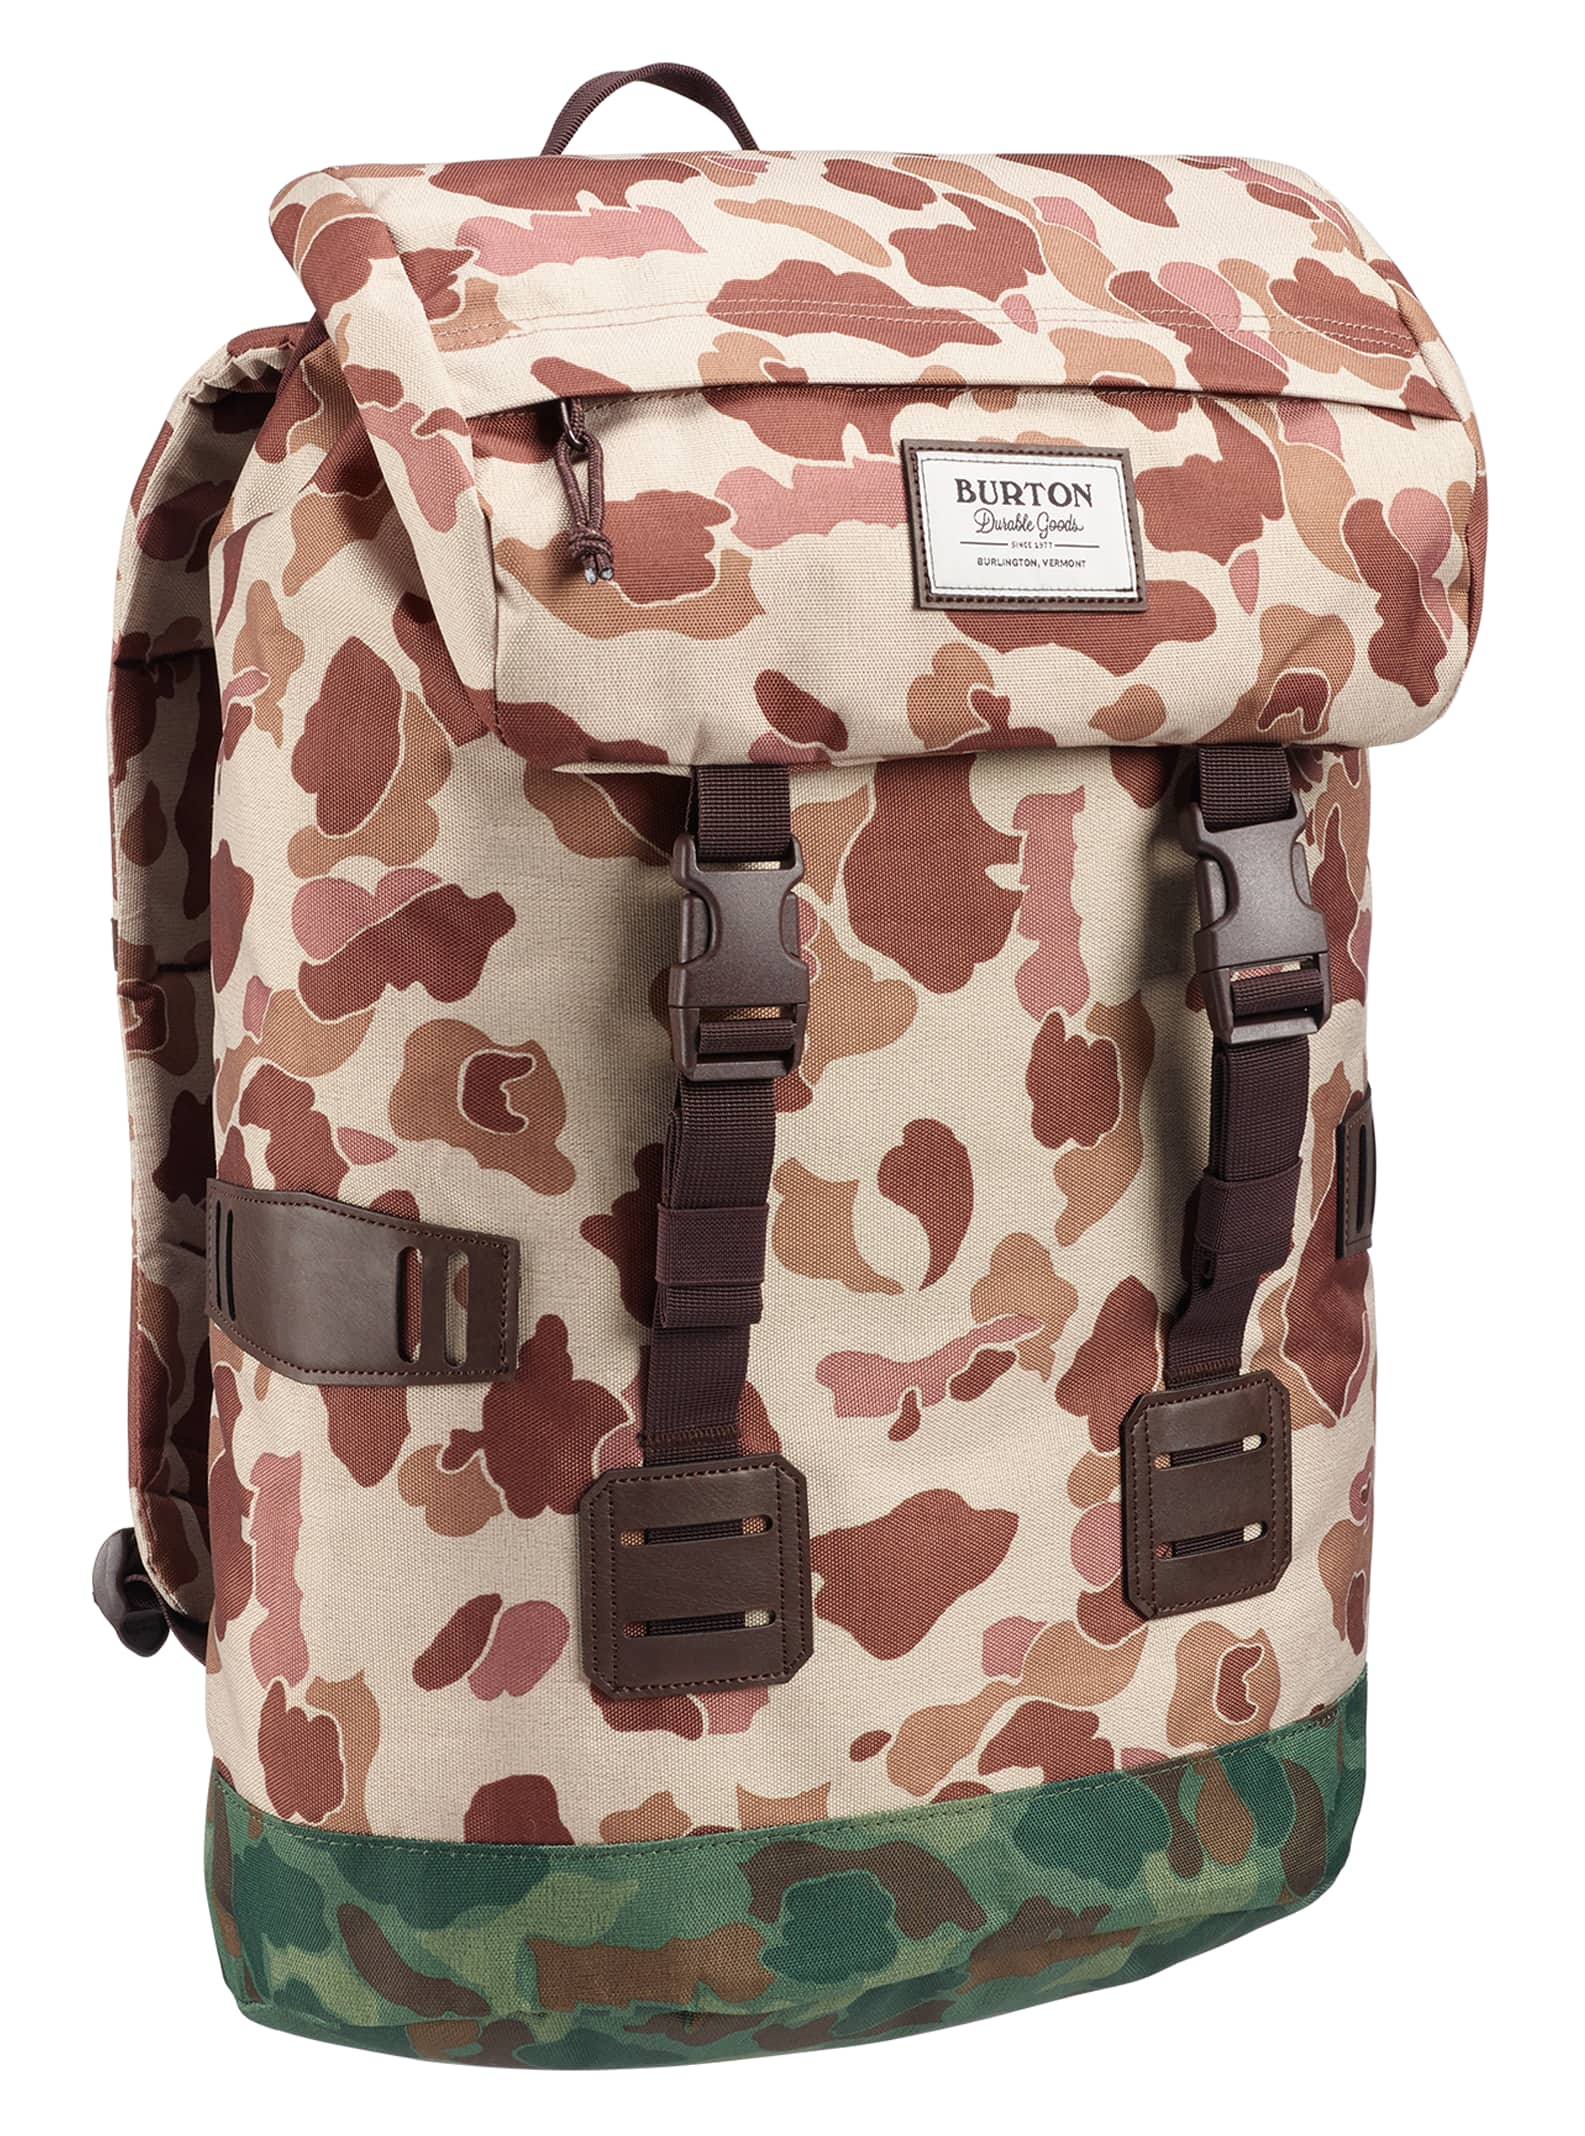 Burton Tinder Pack Rucksack Schule Freizeit Laptop Tasche Backpack 16337105251 